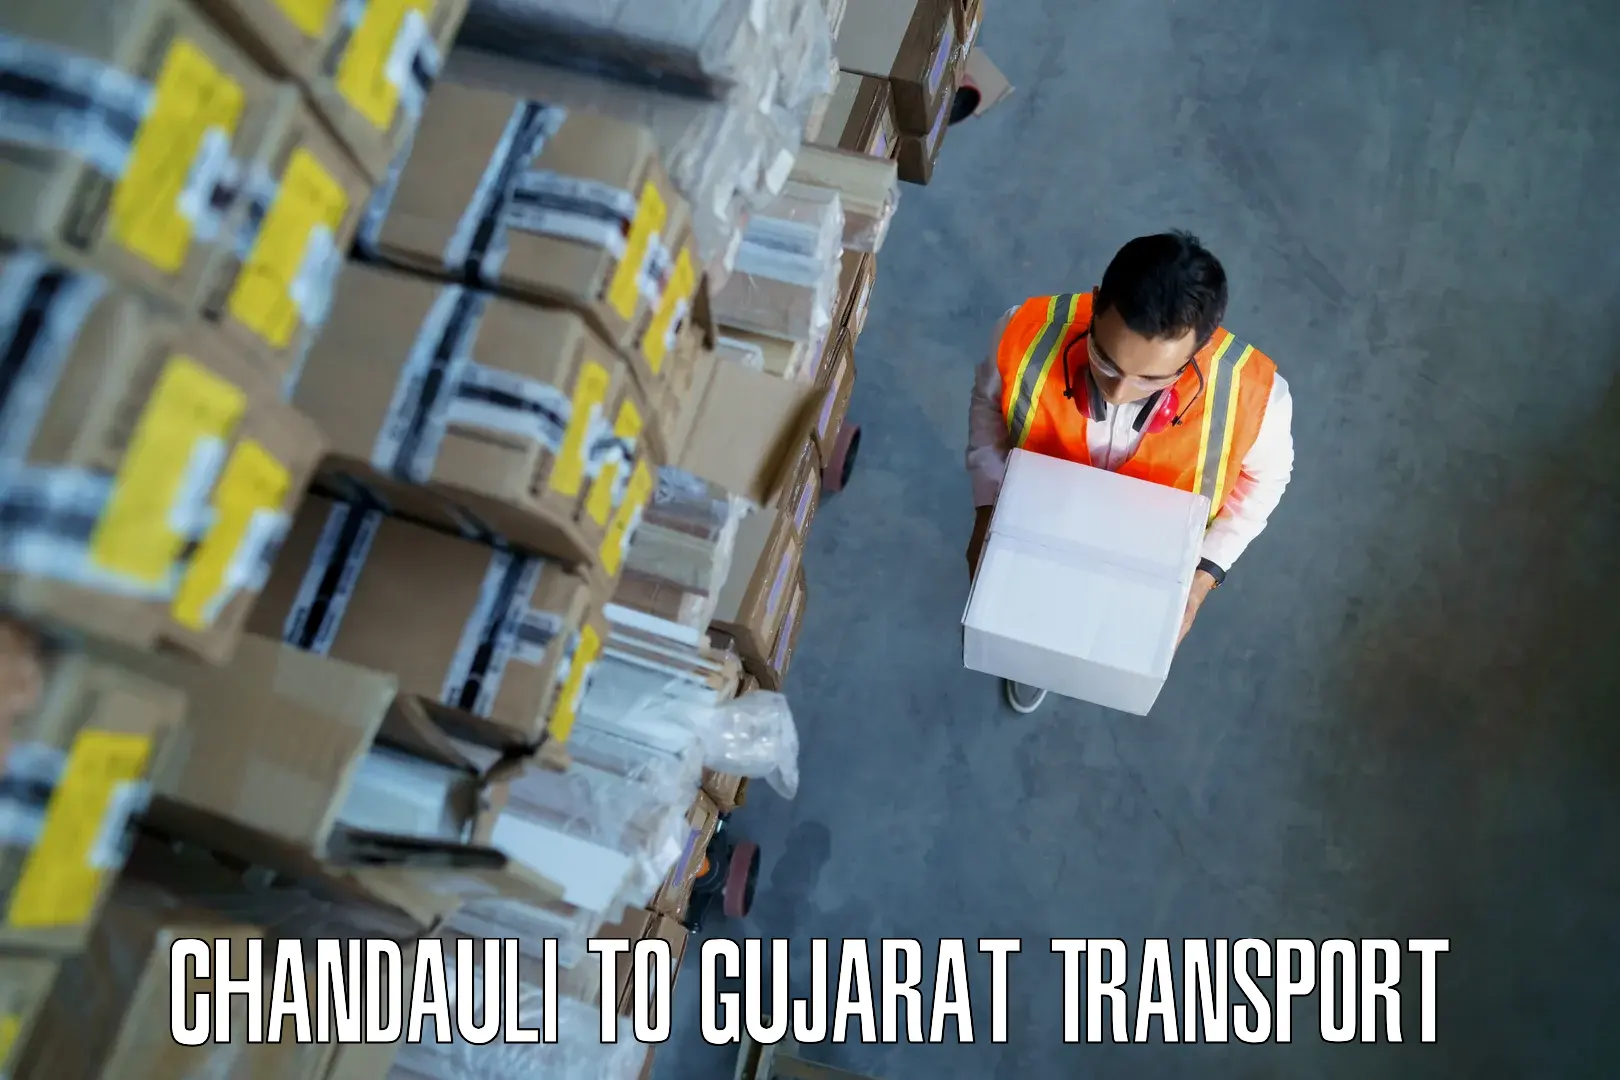 Pick up transport service Chandauli to Lunawada